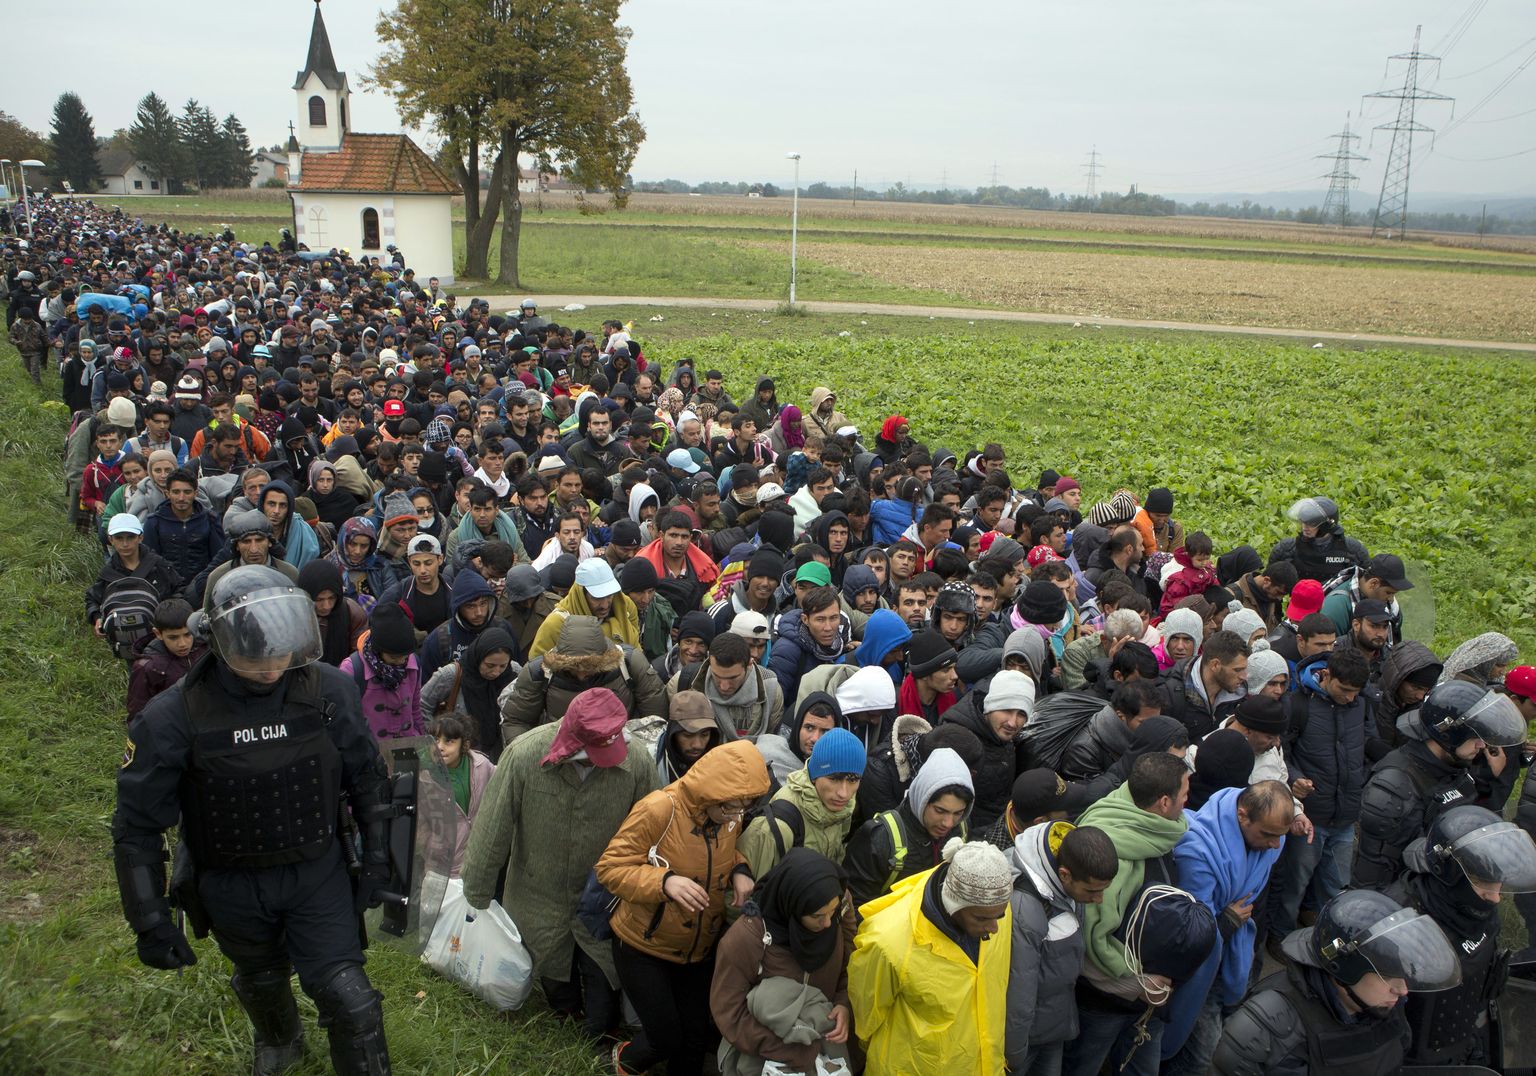 Süüria põgenikud liikumas oktoobris 2015 läbi Horvaatia, üritades jõuda Saksamaale